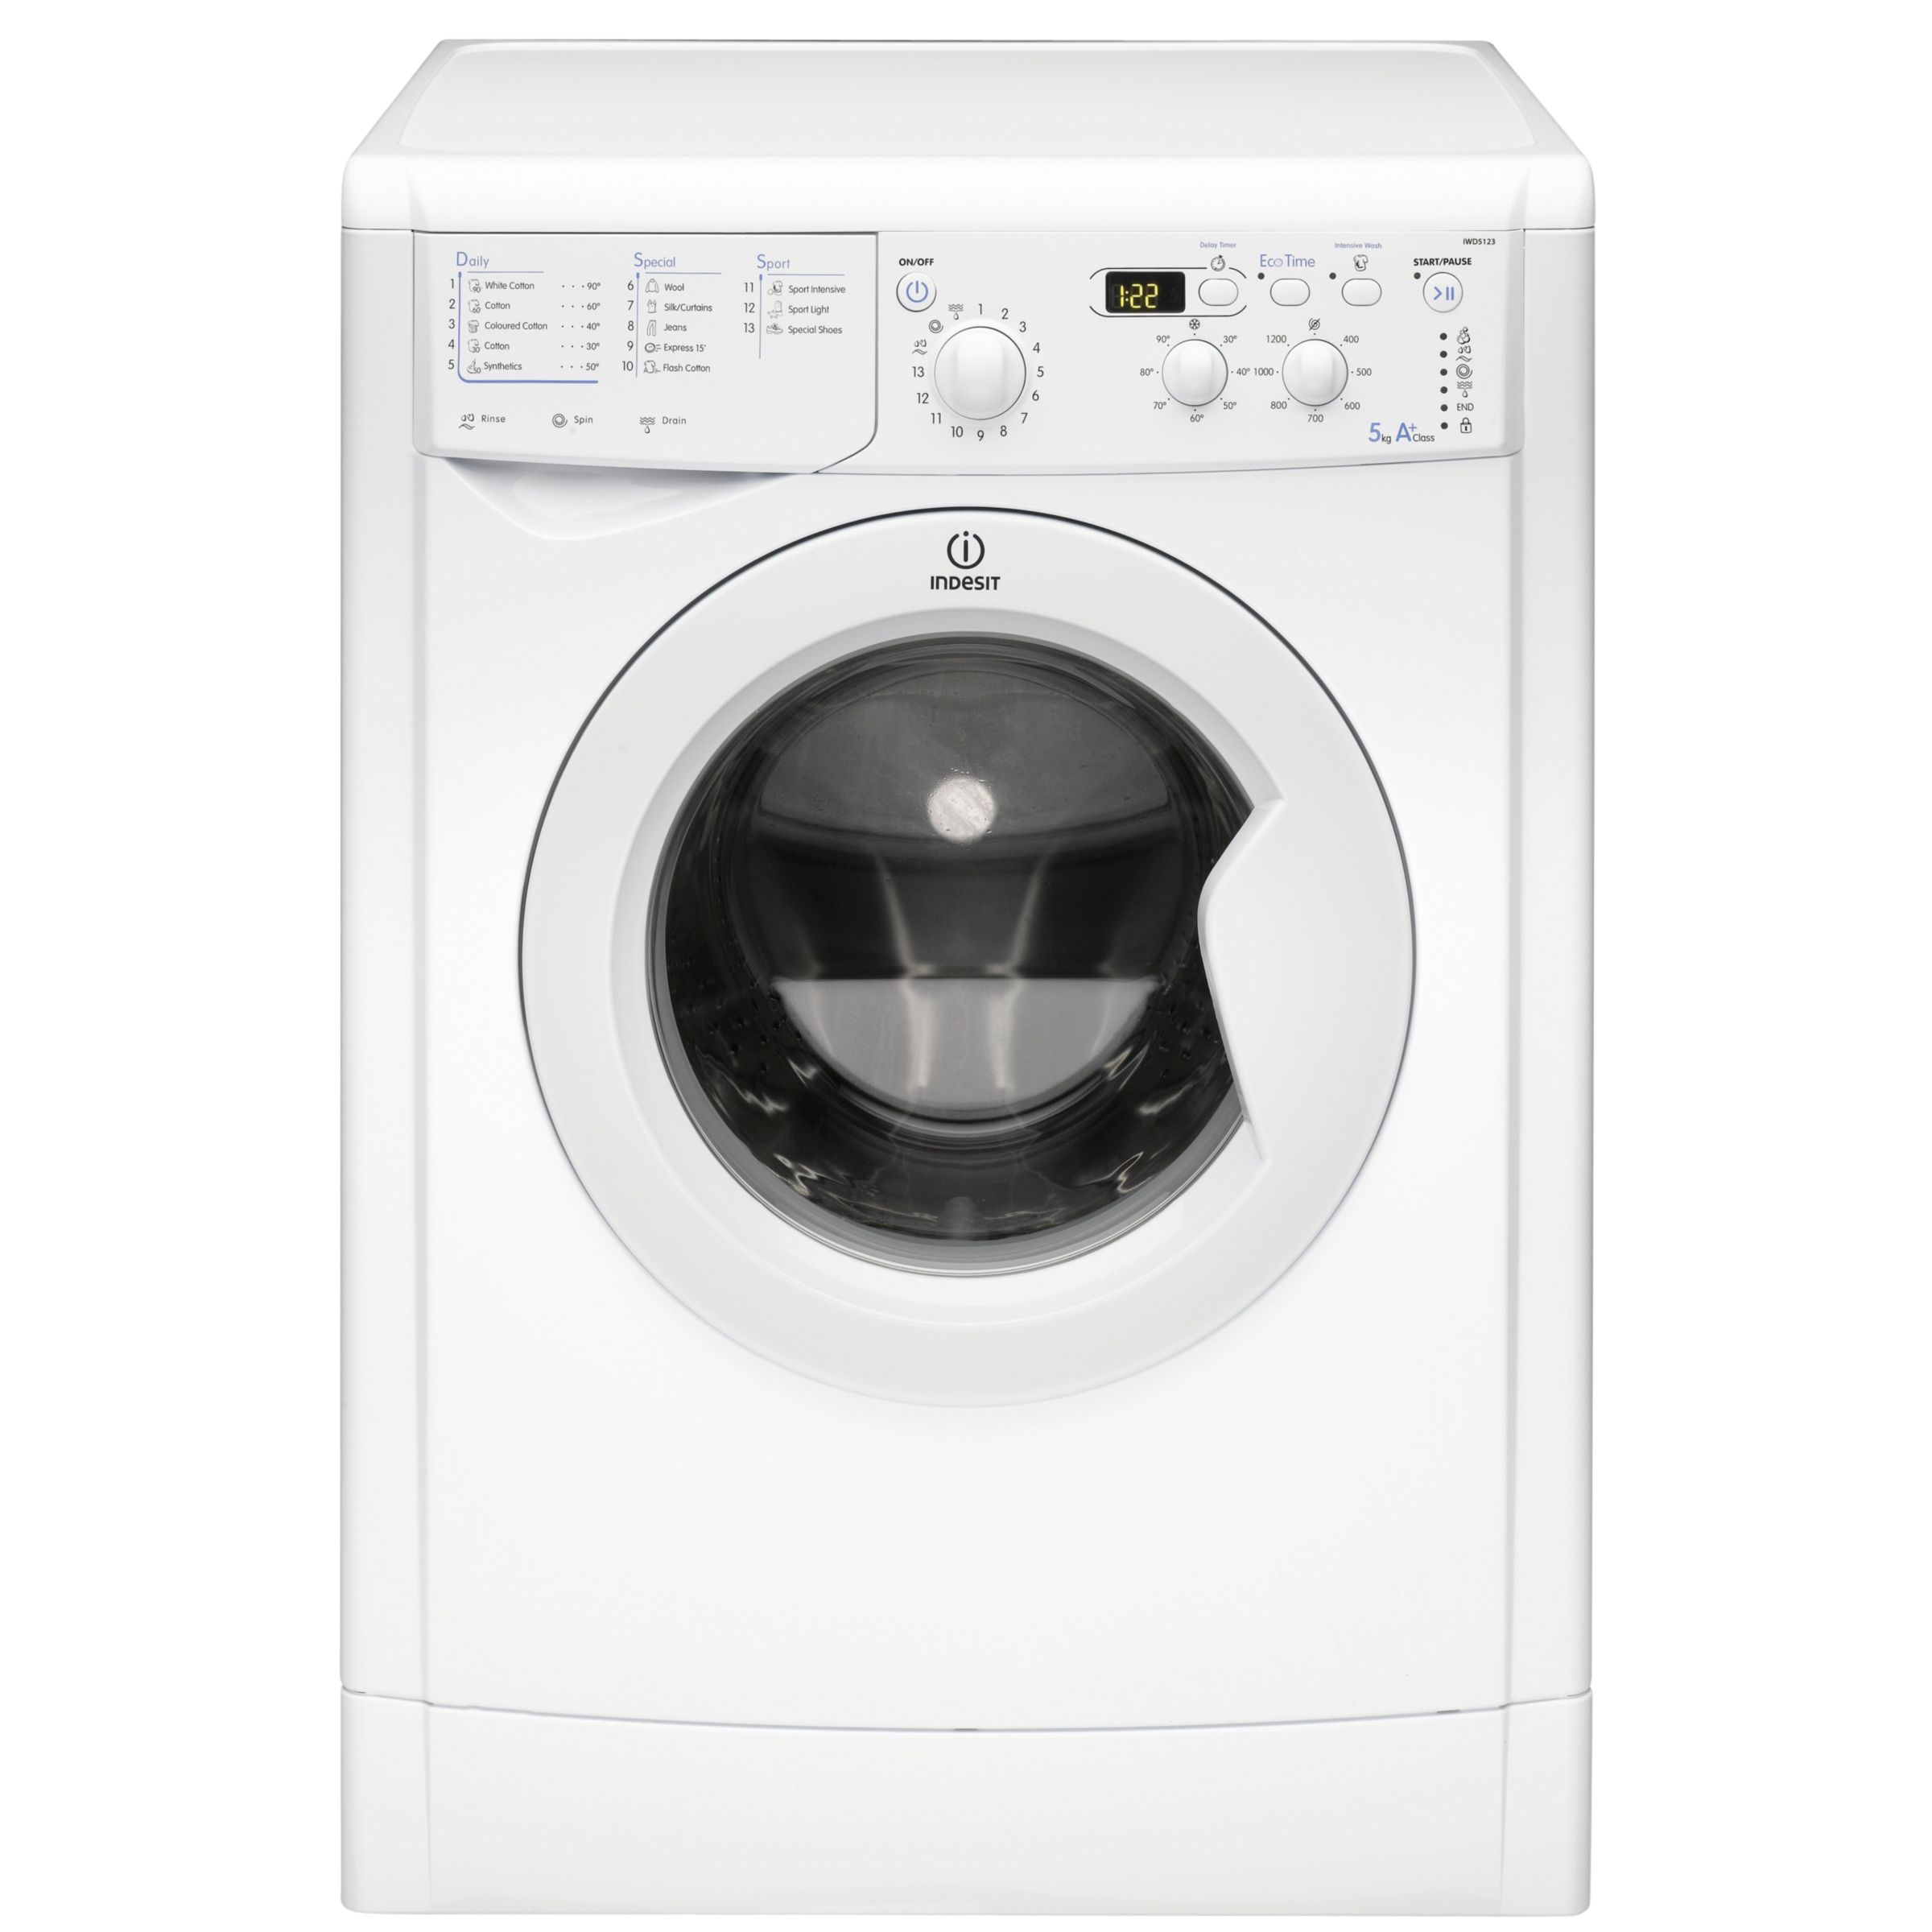 Indesit IWD5123 Washing Machine, White at John Lewis